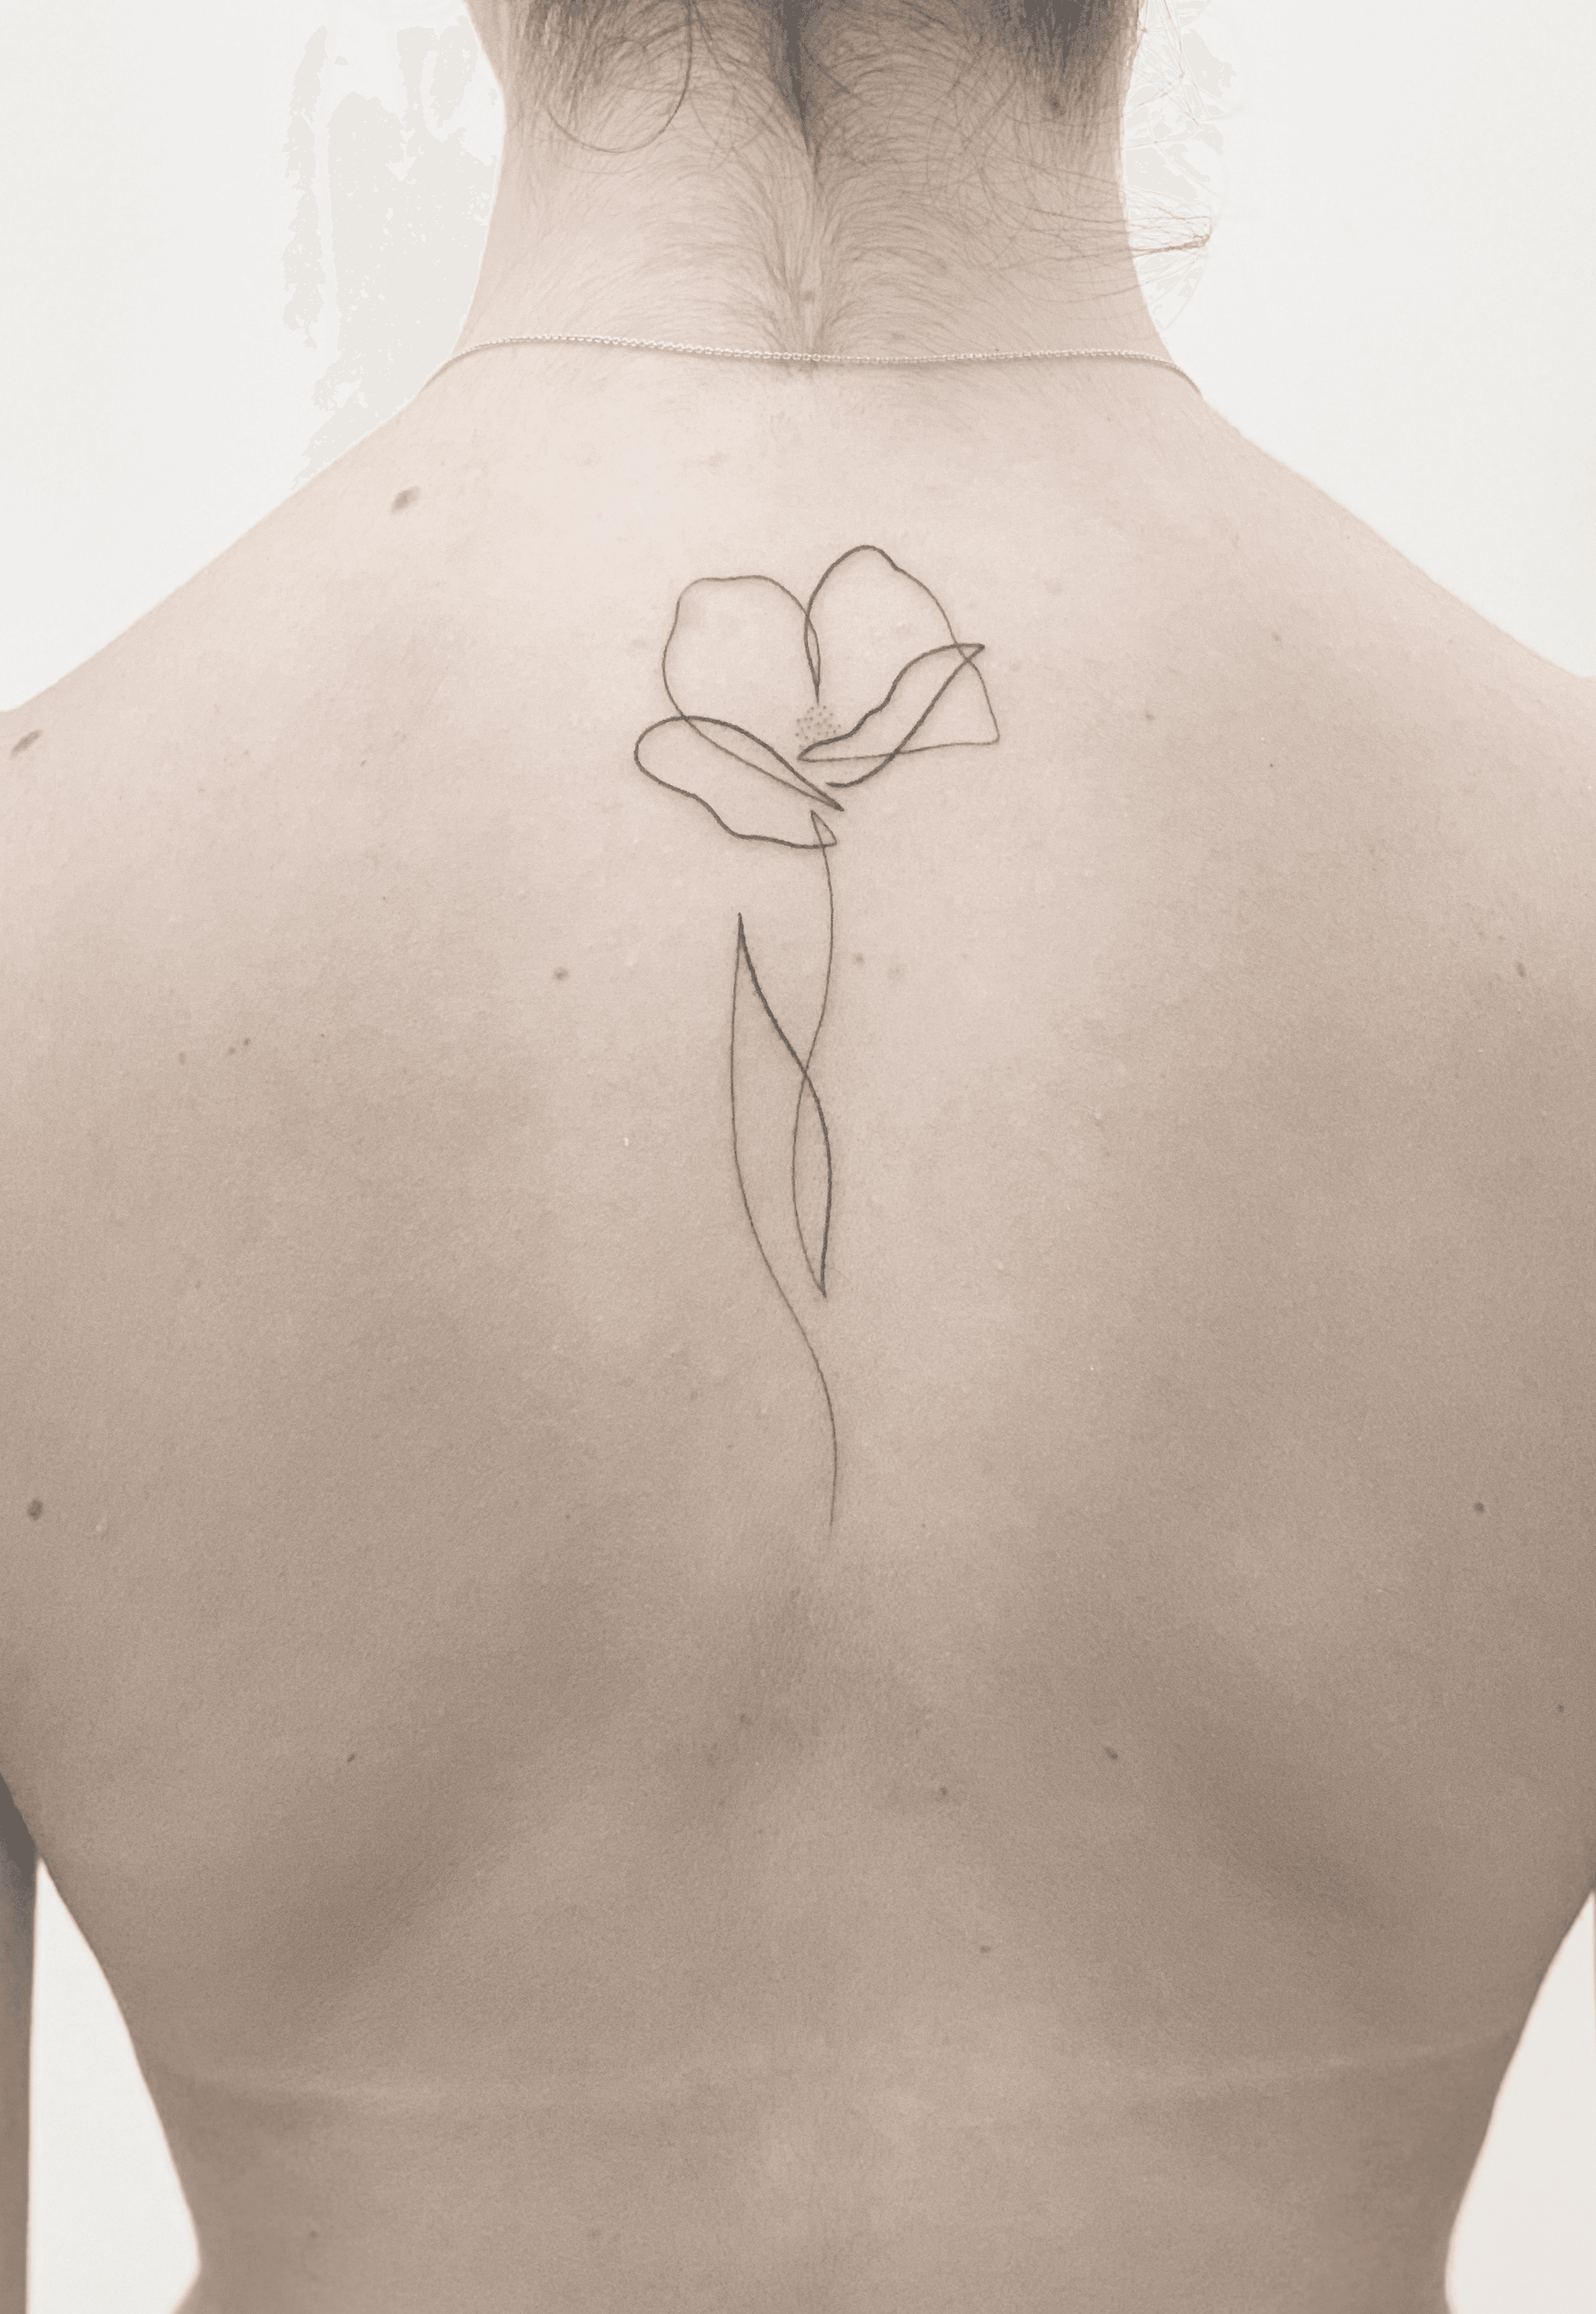 Small fine line poppy outline temporary tattoo designed